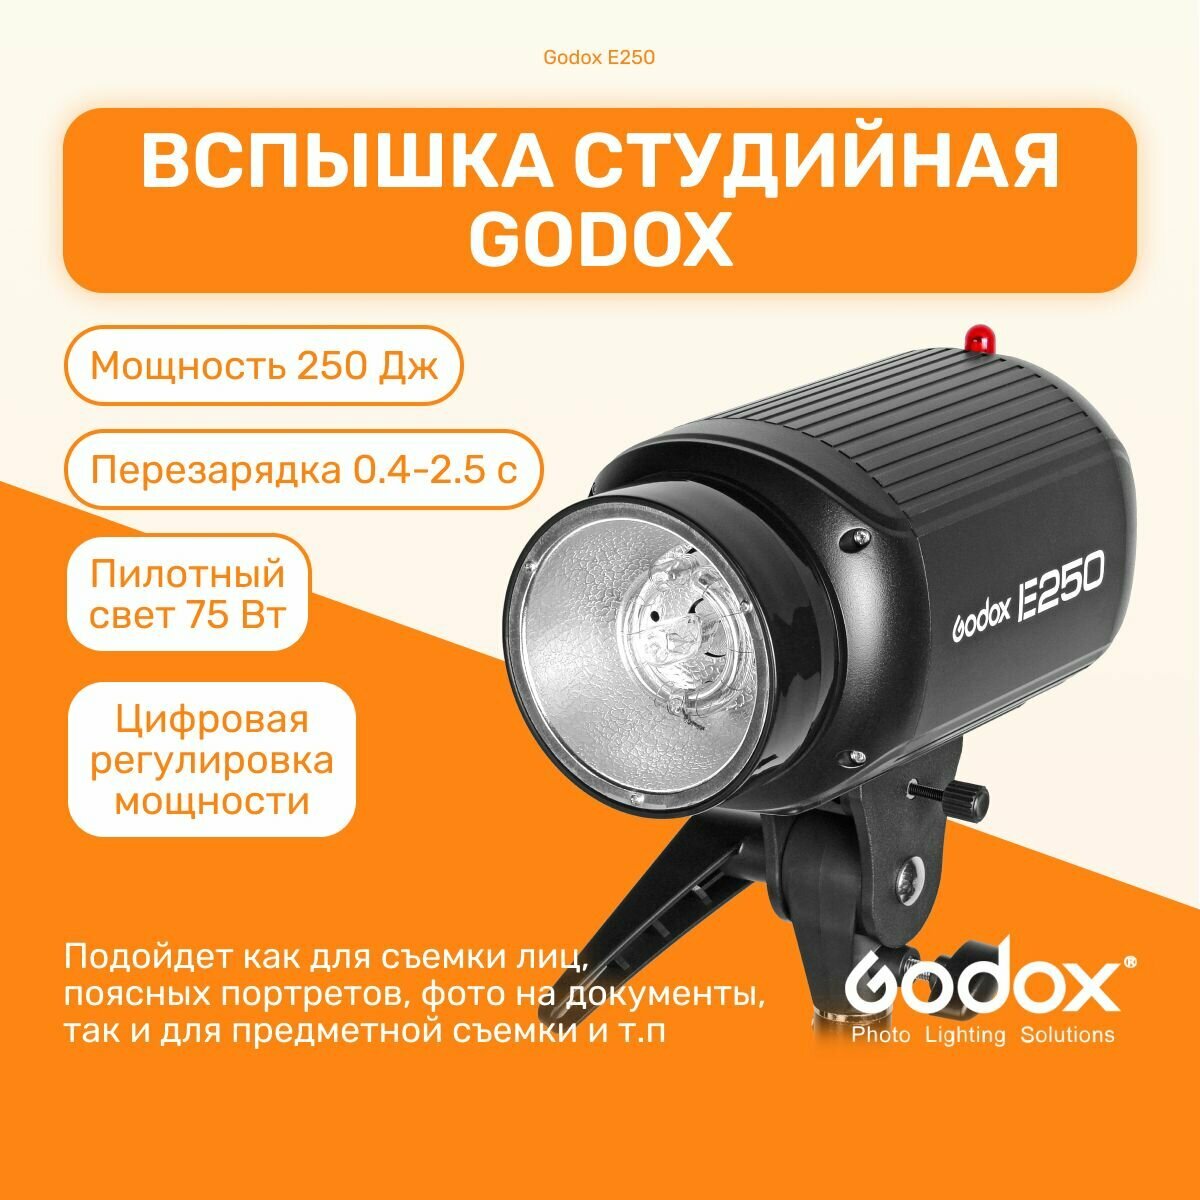 Вспышка студийная Godox E250 (компактный импульсный моноблок), свет для фото, для портретов, съемки товаров для интернет-магазинов, на документы